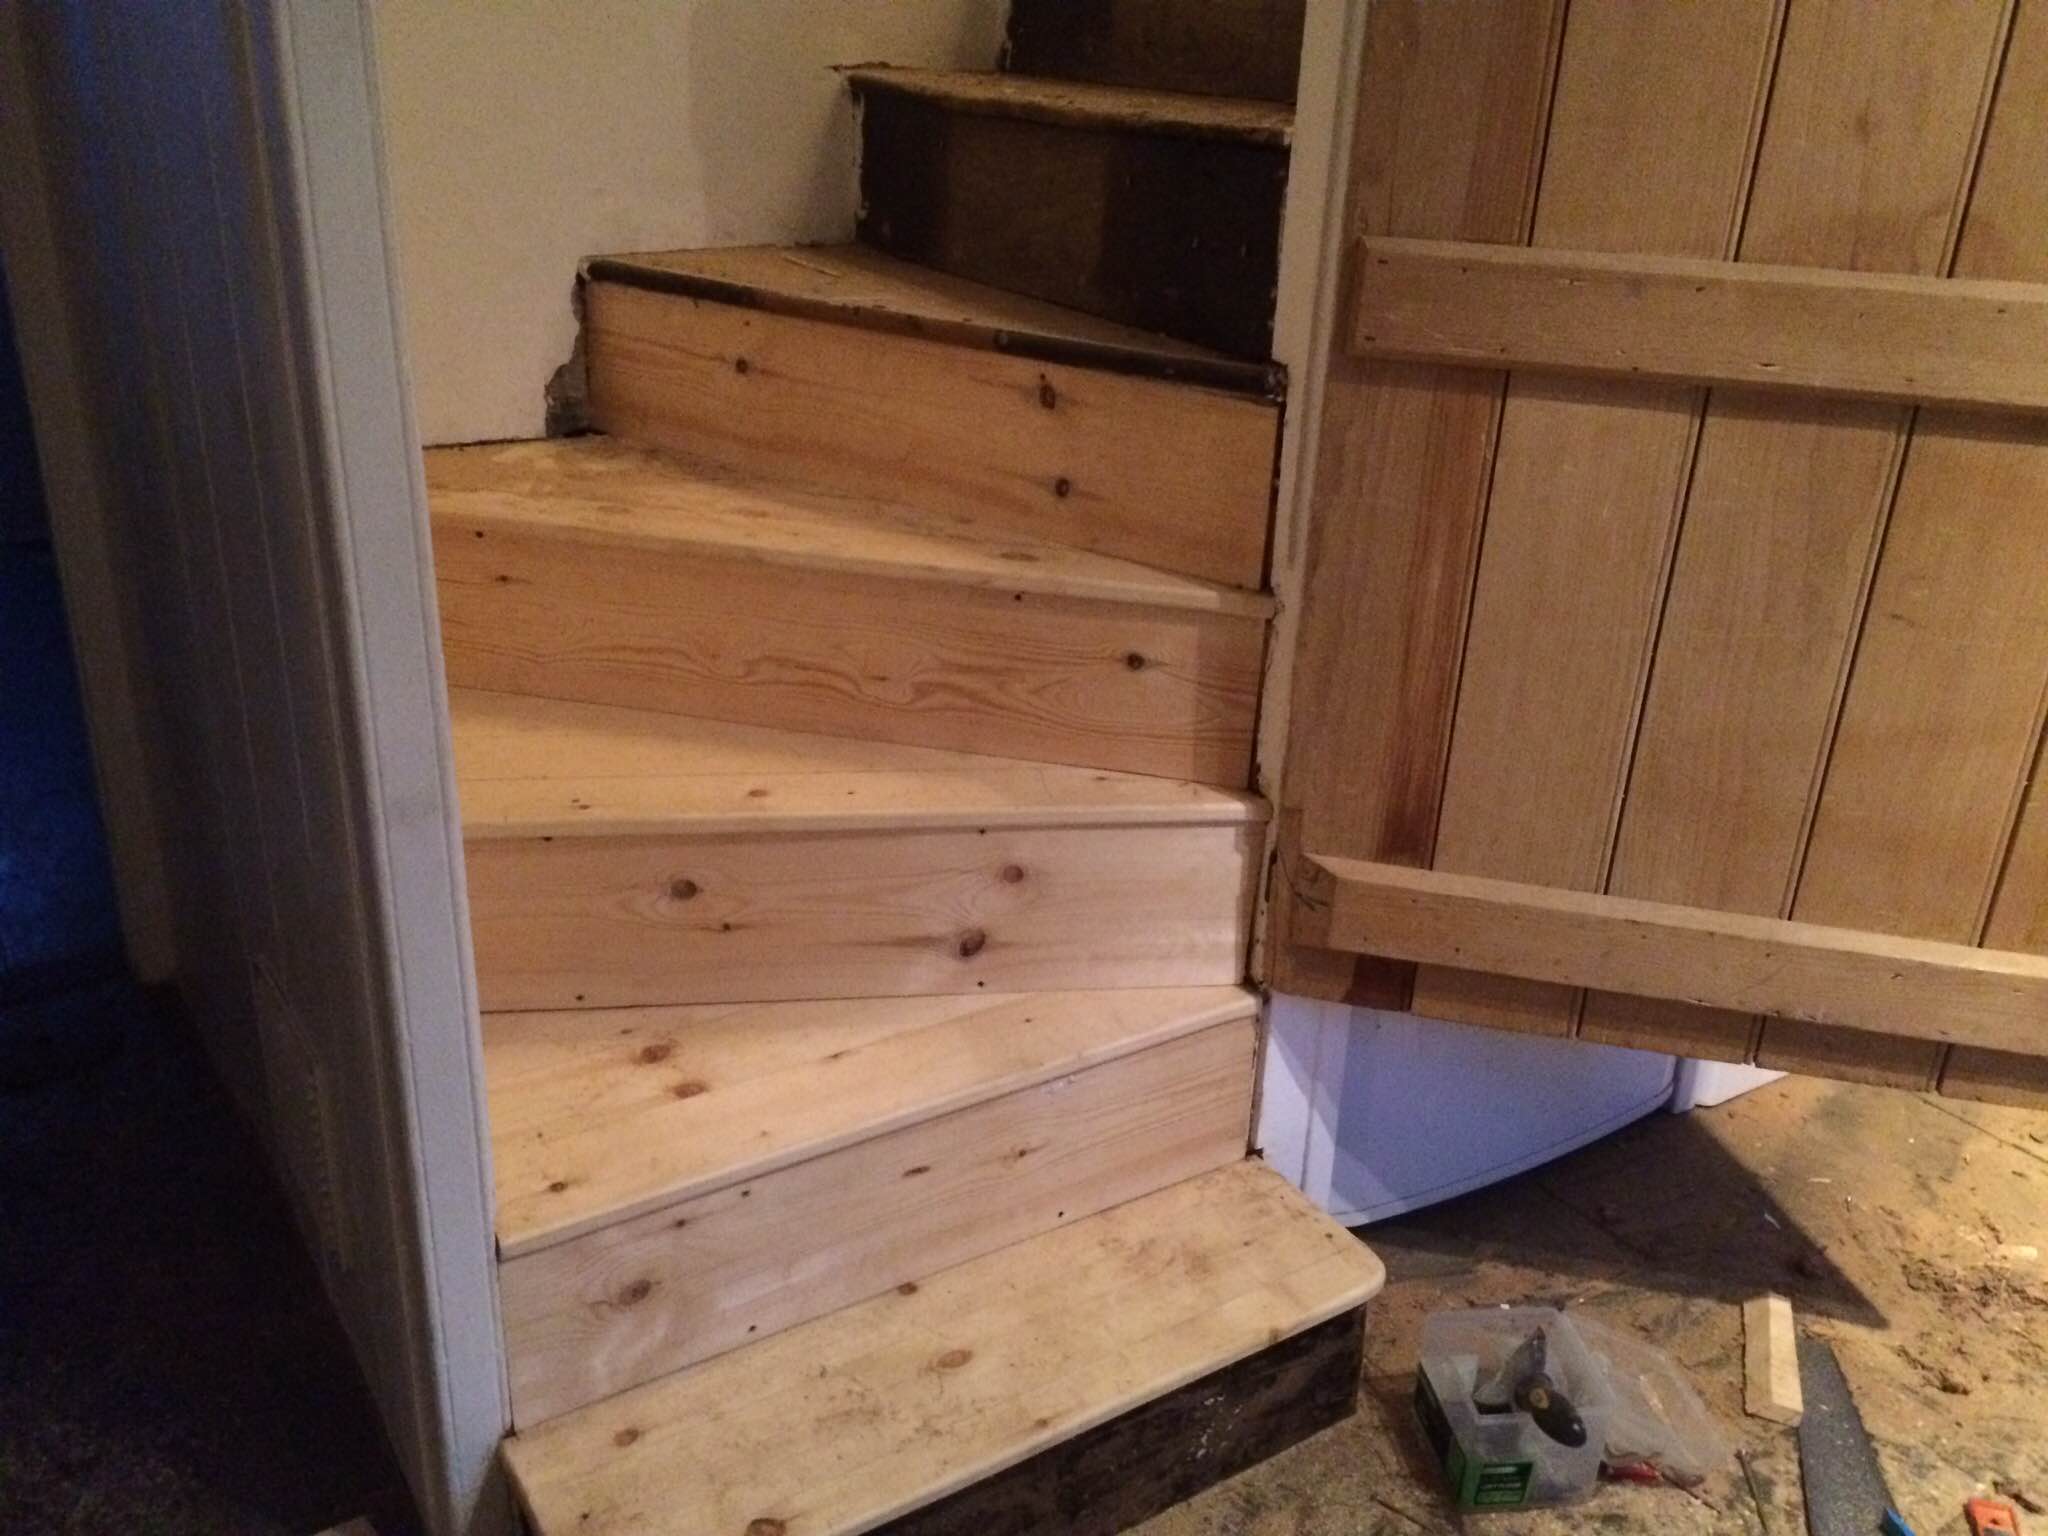 Squeaky Stair case repair in Hull UK.